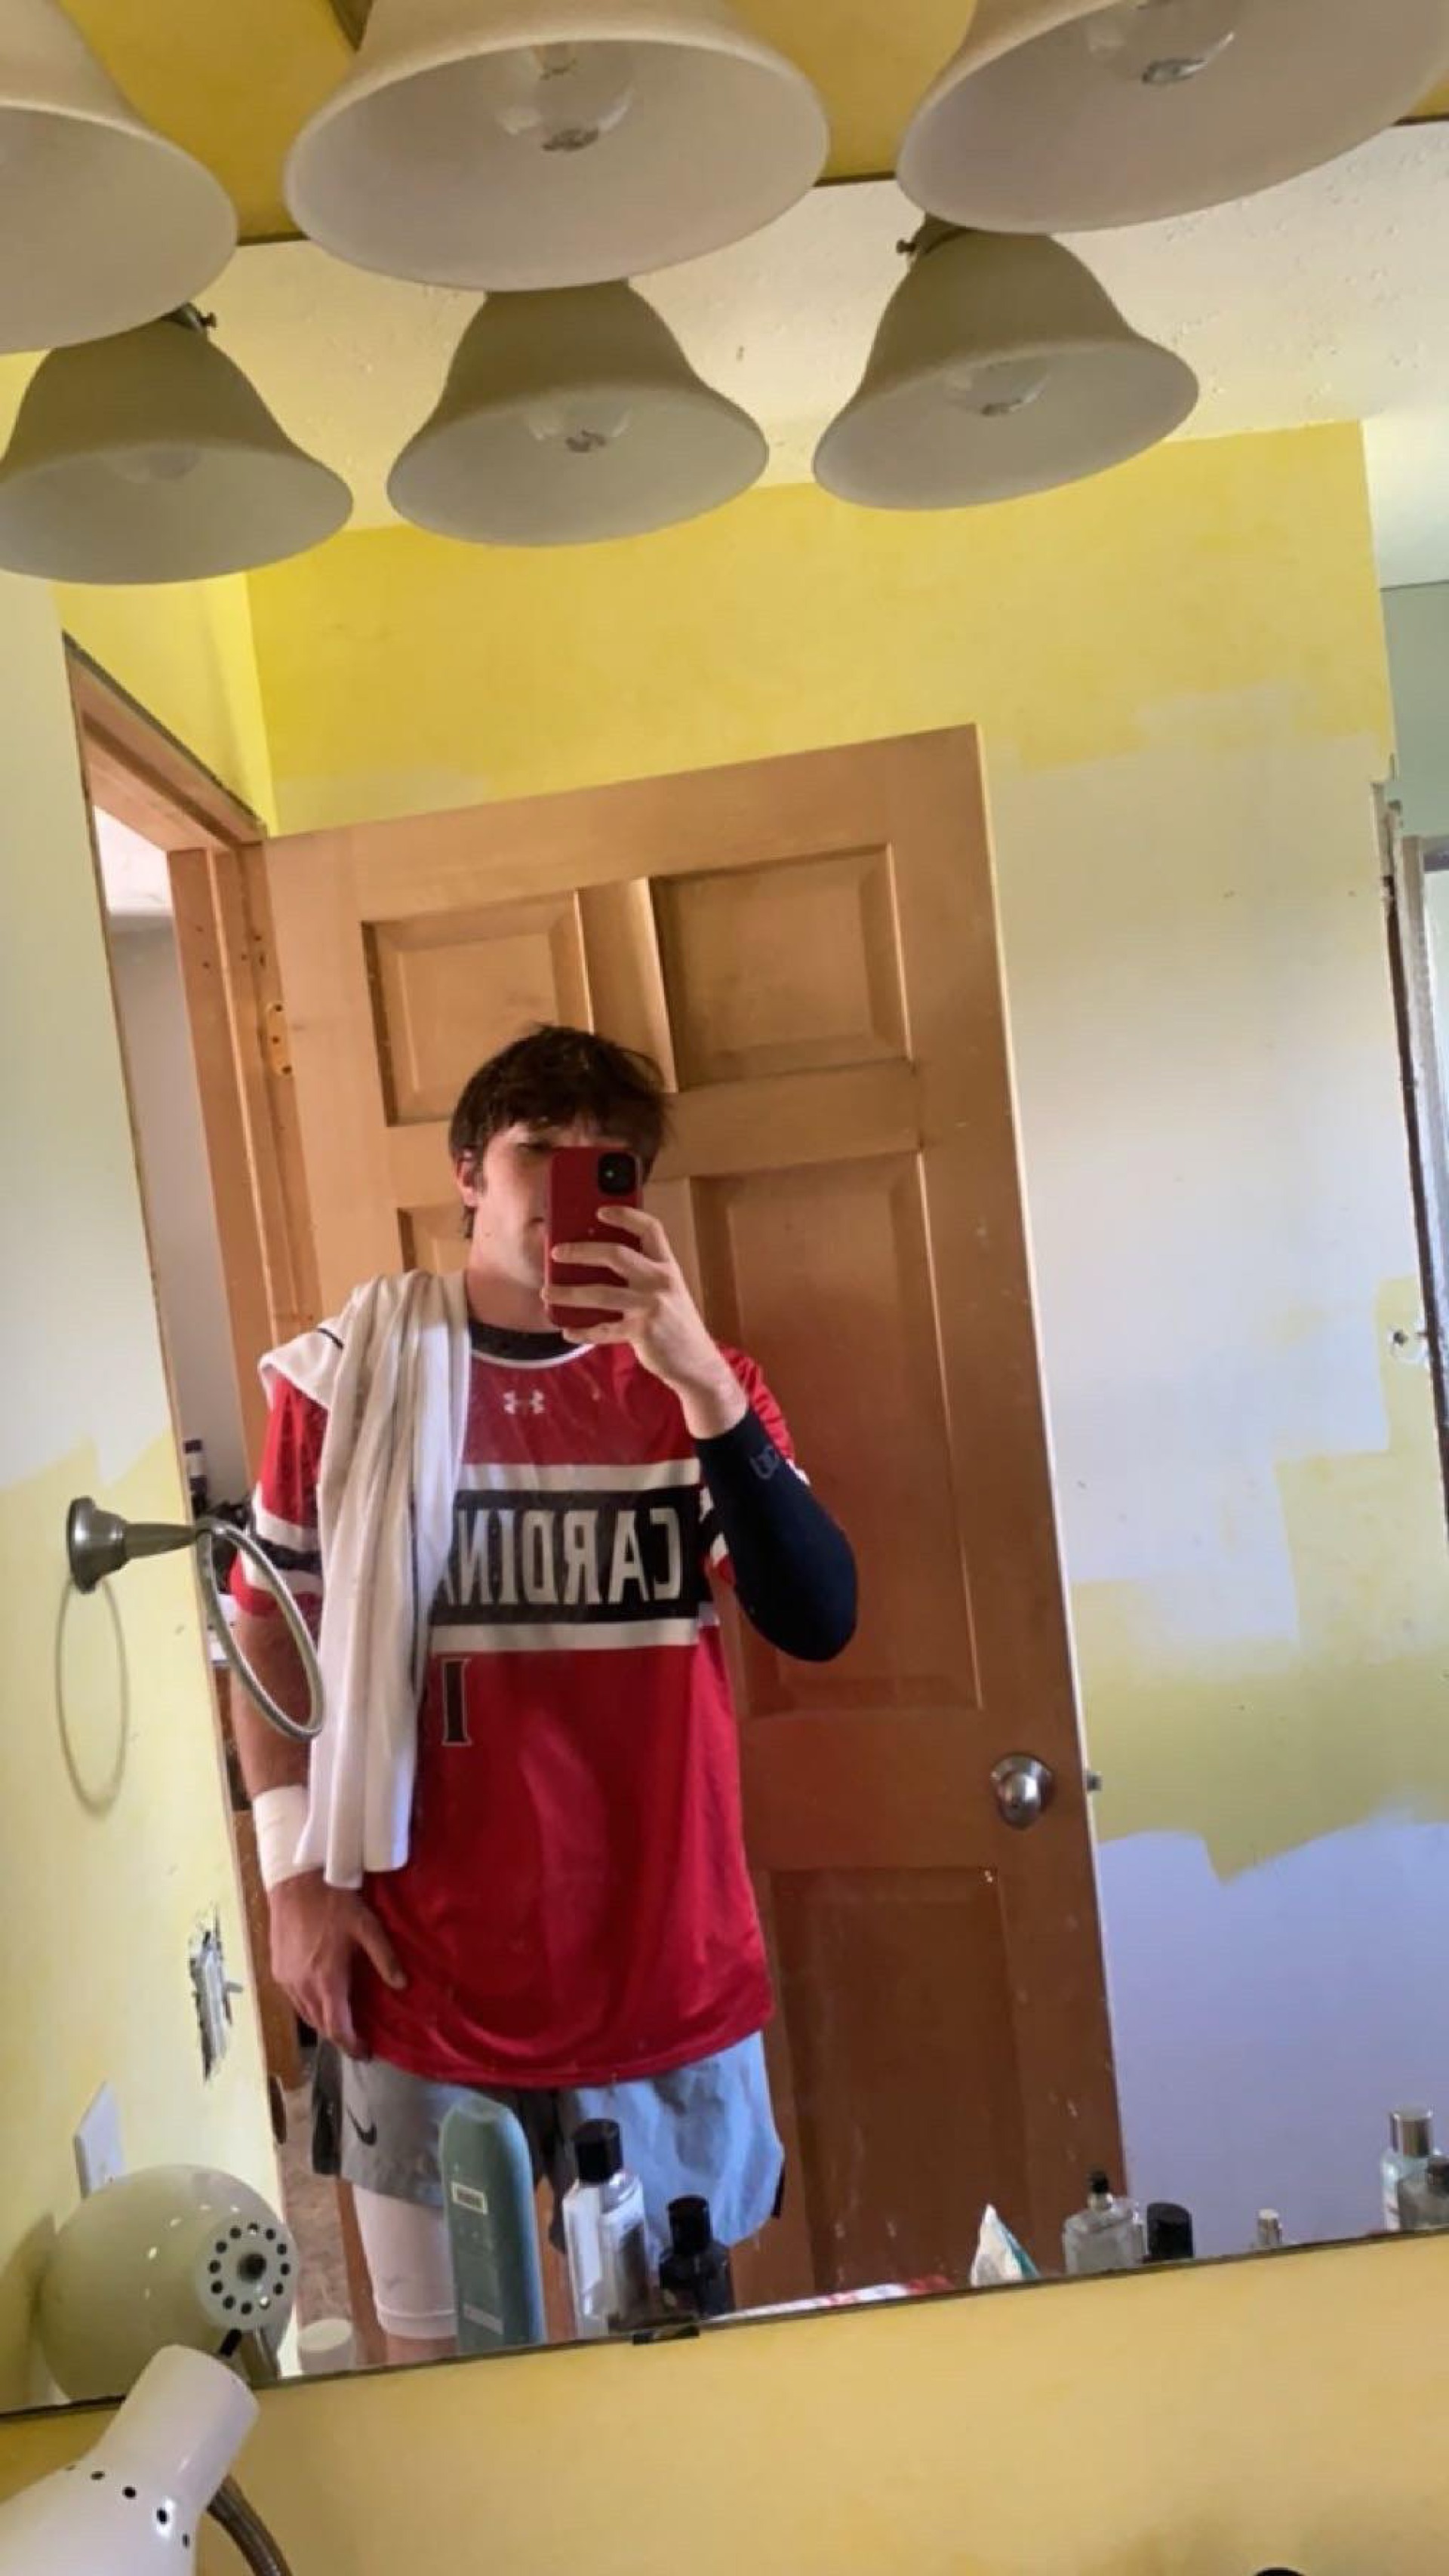 Male dressed in basketball uniform taking selfie in mirror